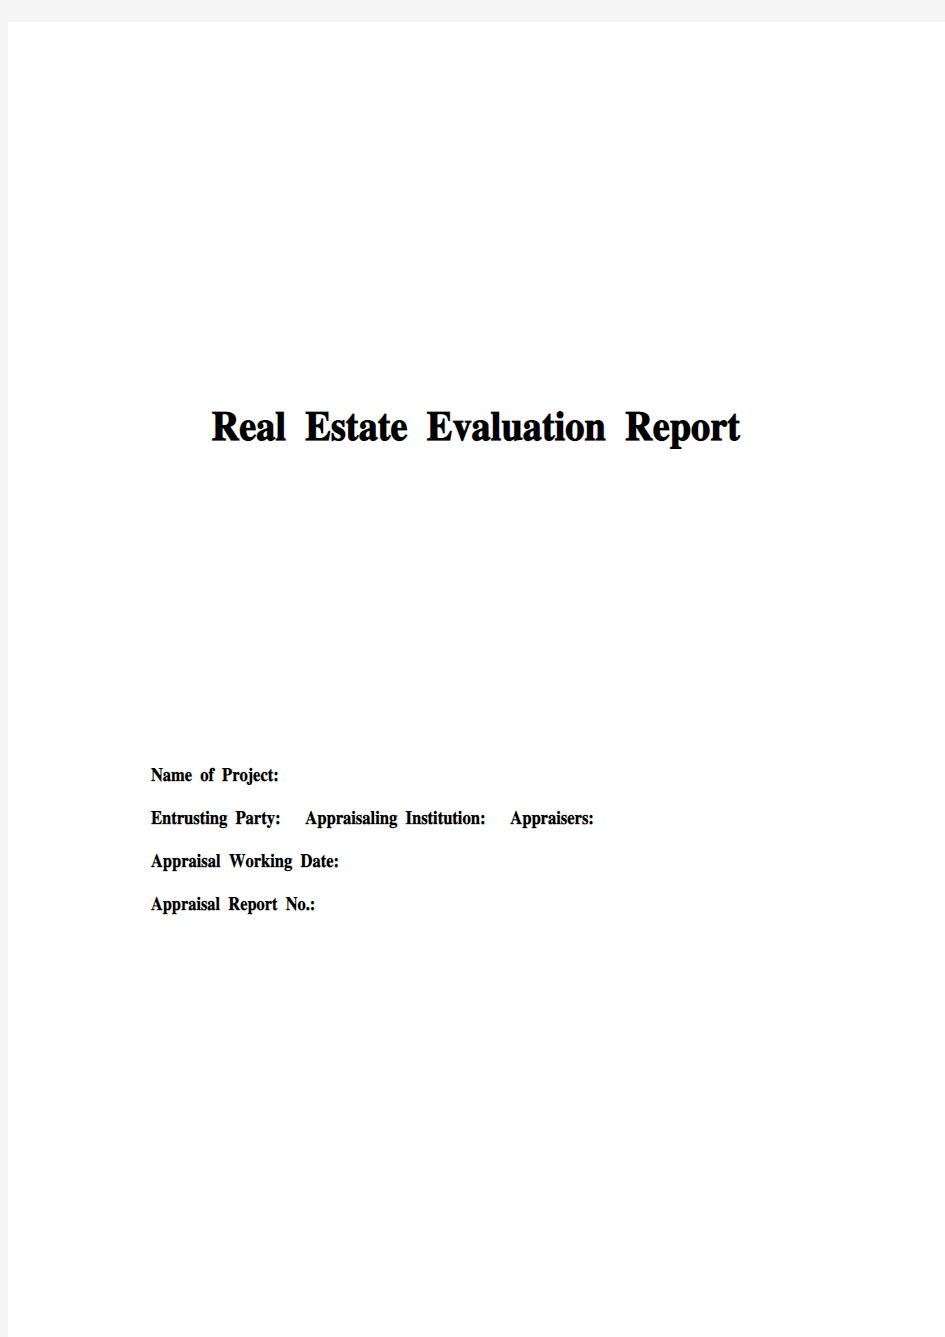 房地产评估报告 翻译模板